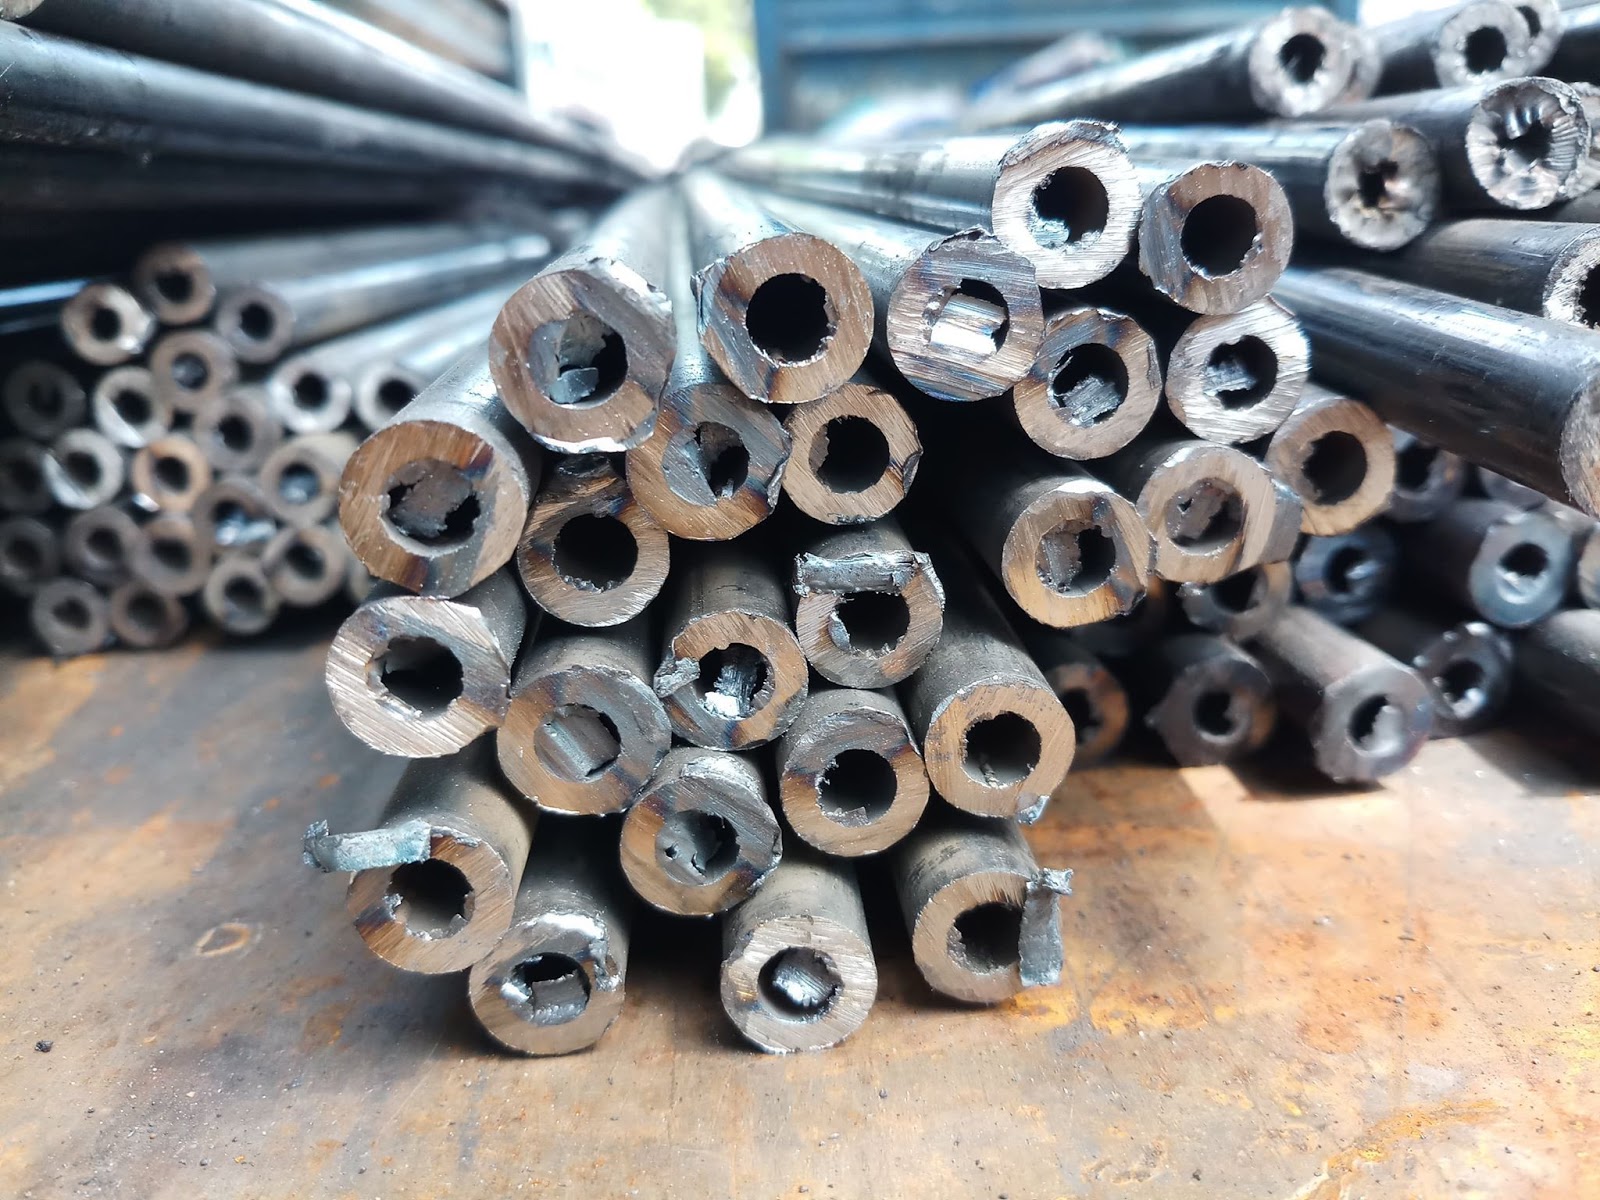 Gia công ống thép có quy trình đơn giản, giá thành rẻ nên được ứng dụng rộng rãi trong sản xuất